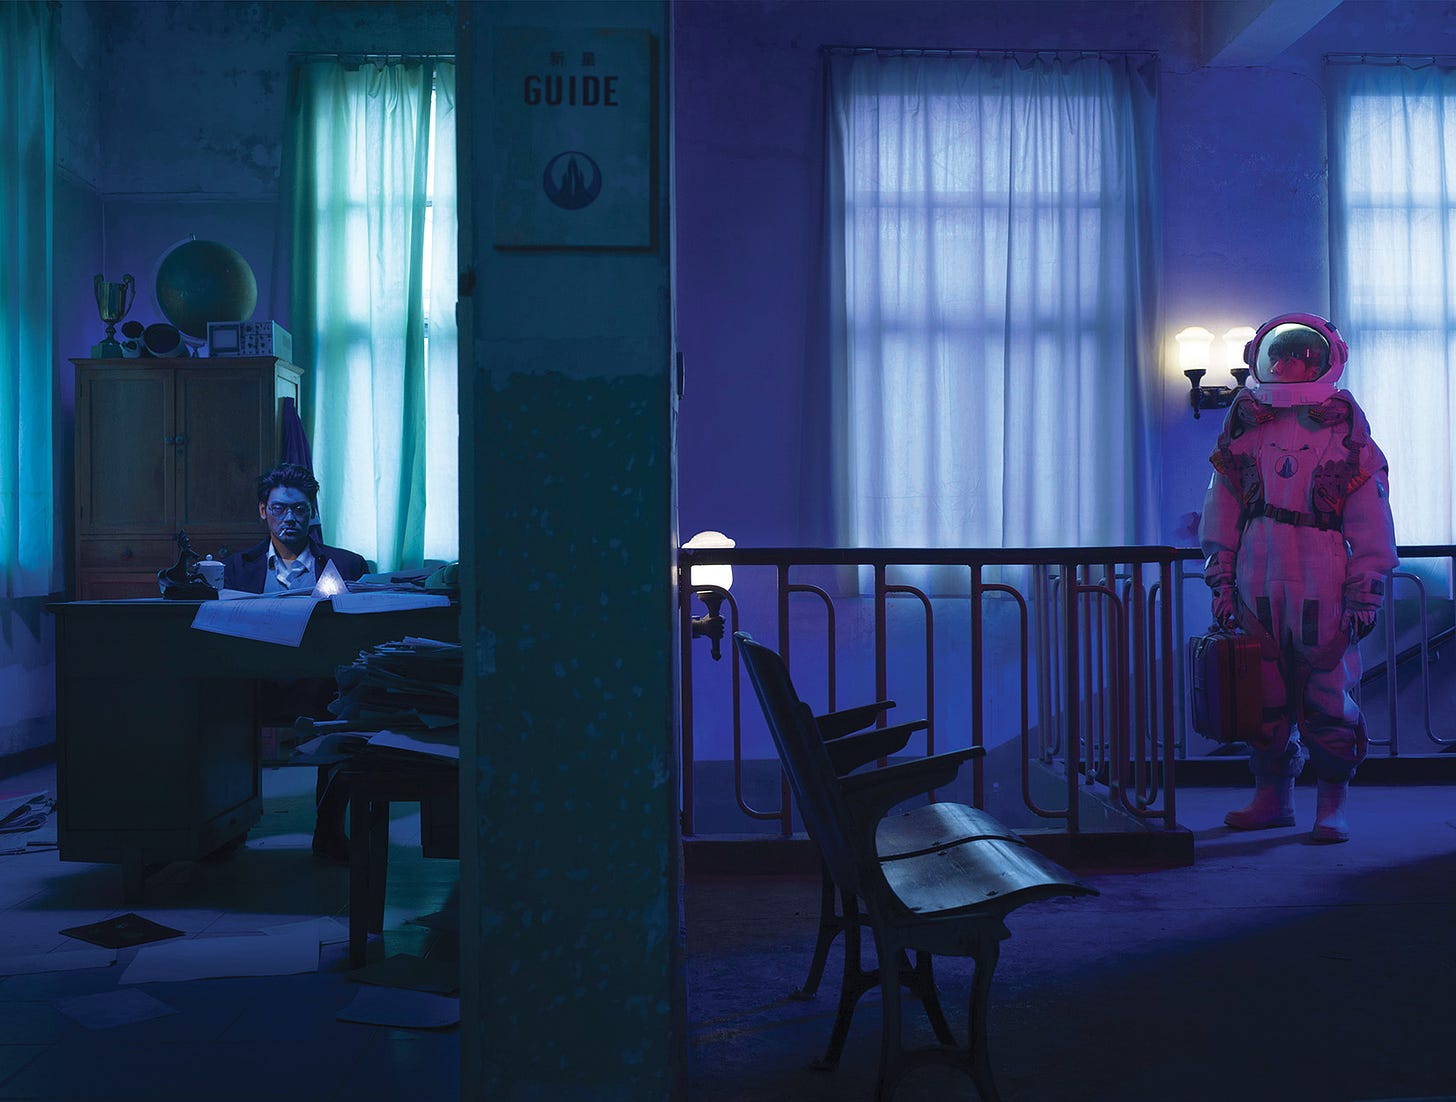 Imagem: escritório com luz baixa, um homem sentado numa escrivaninha com um cigarro na boca lendo papeis, um armário atrás, paredes com cortinas e uma menina vestida de astronauta com uma mala na mão o olhando